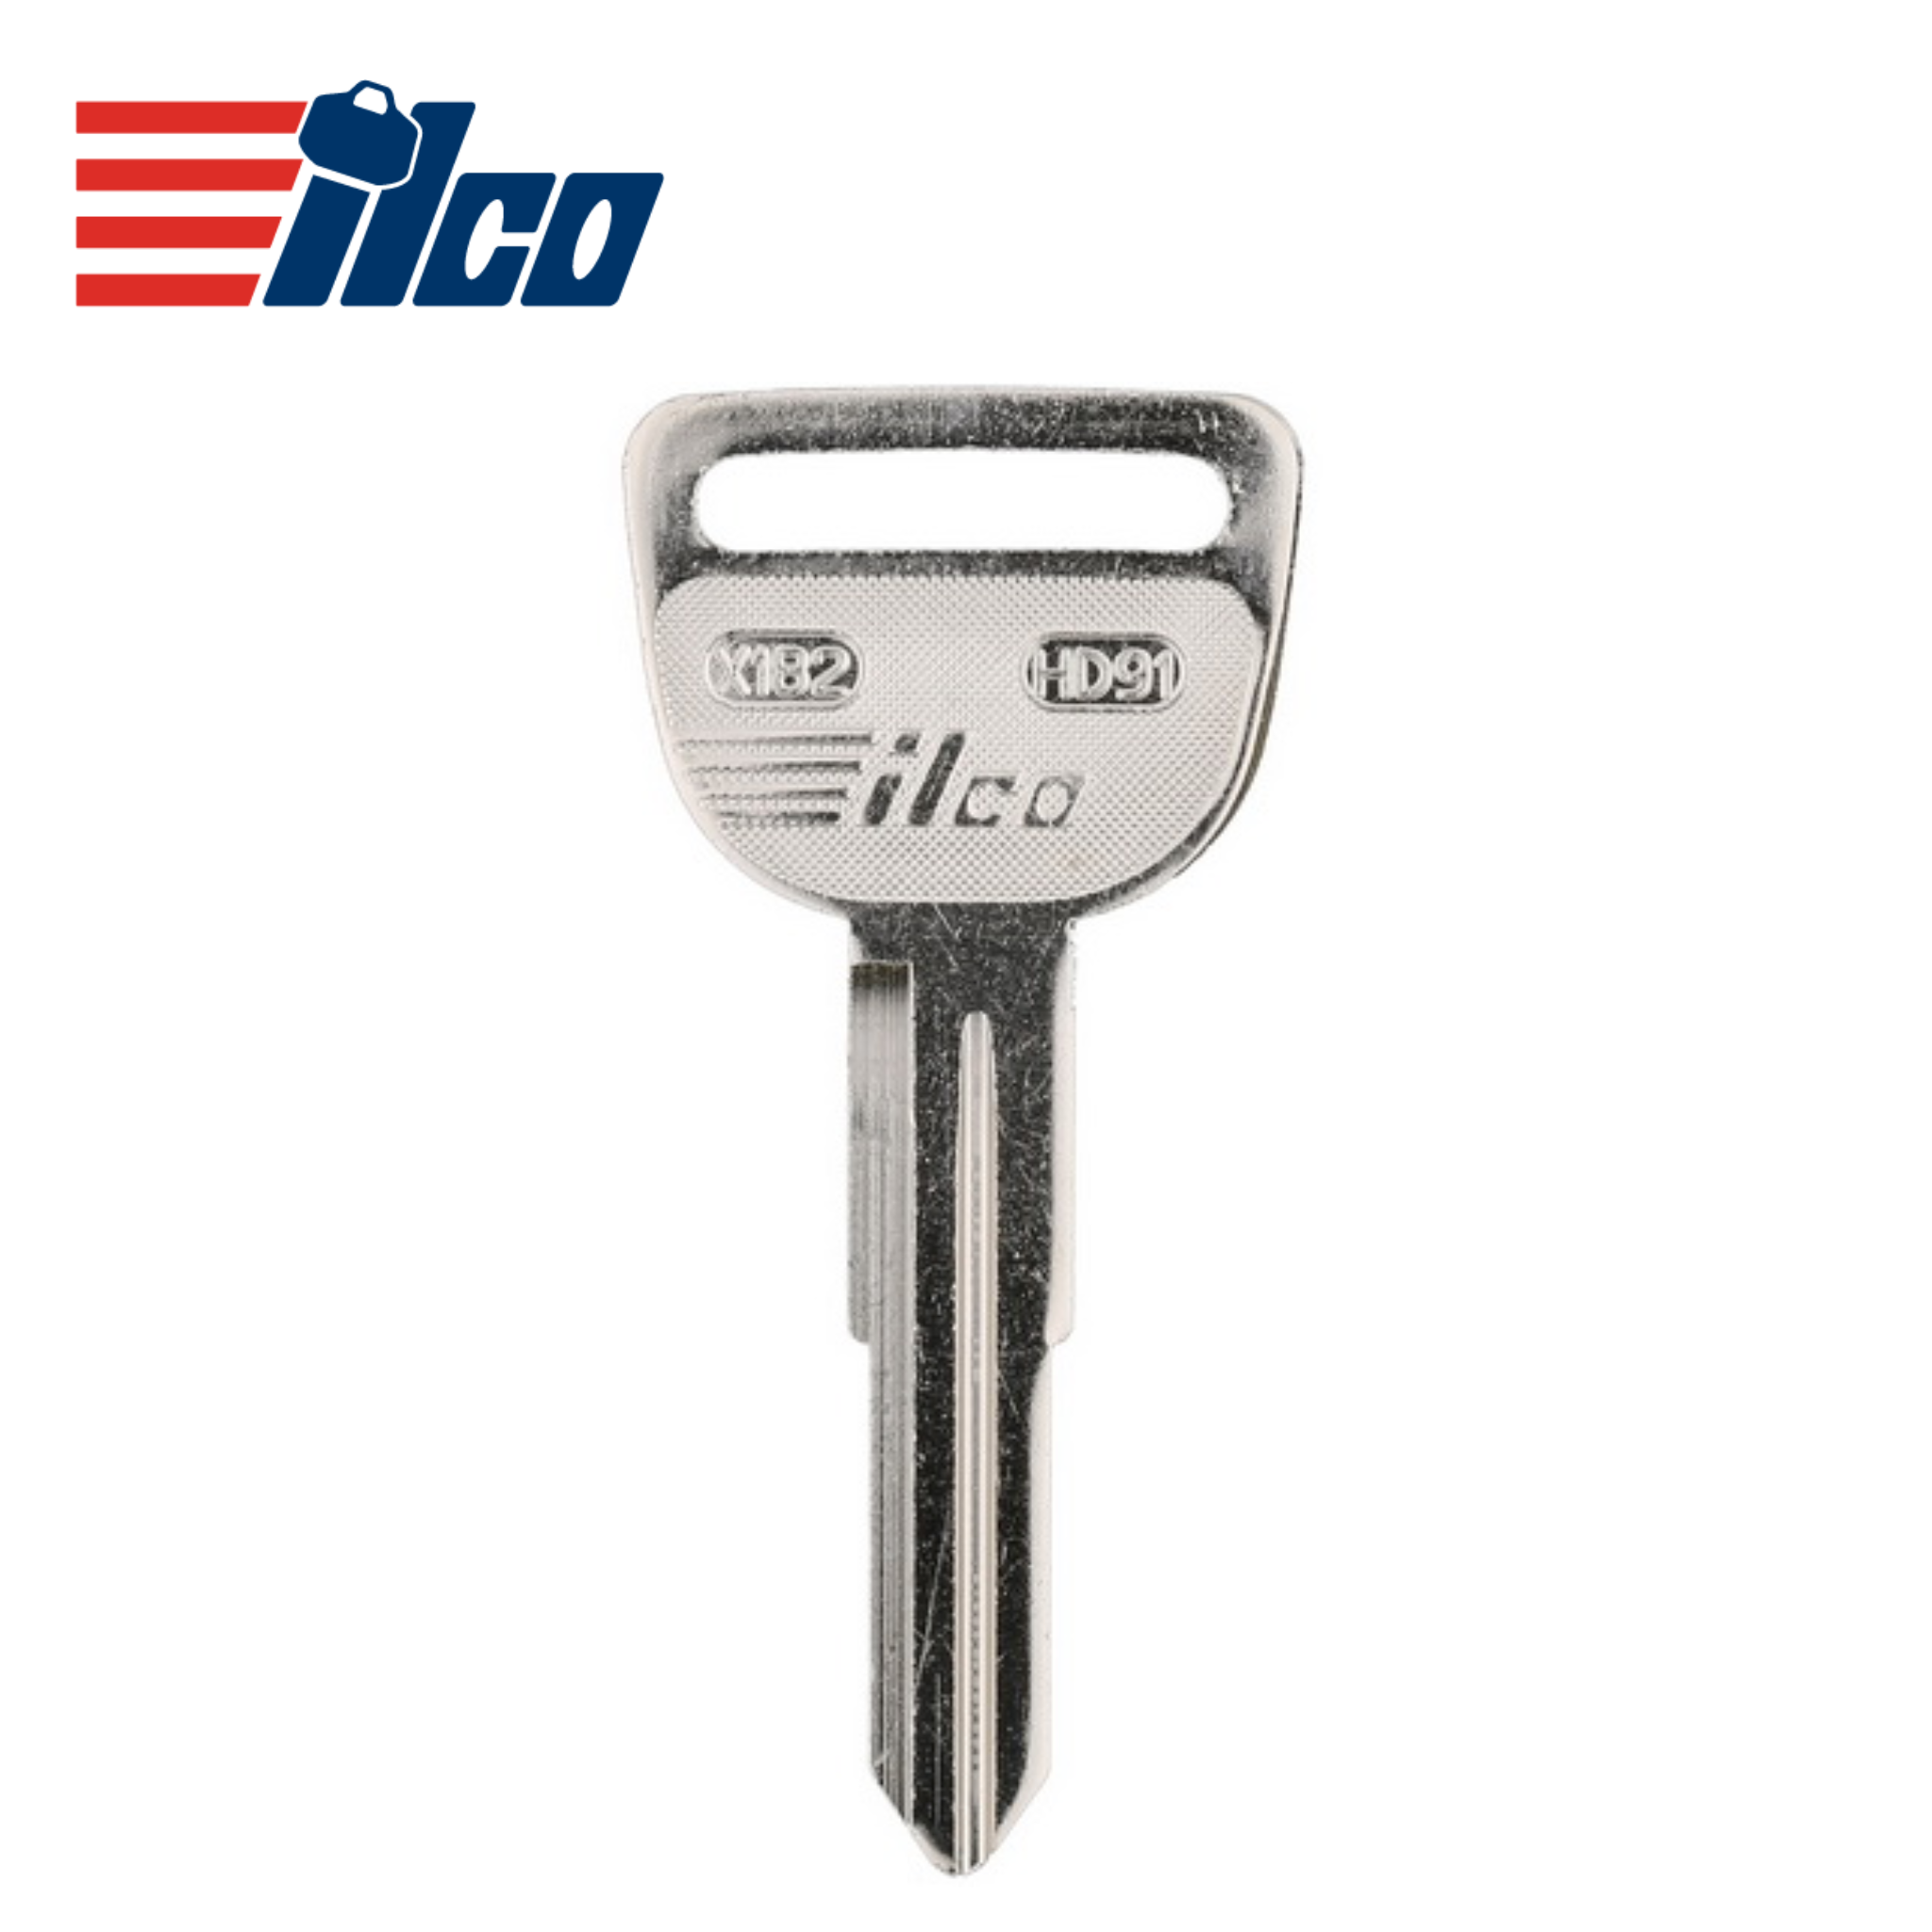 Honda - ILCO 1988-1994 Metal Test Key HD91/X182 - Royal Key Supply